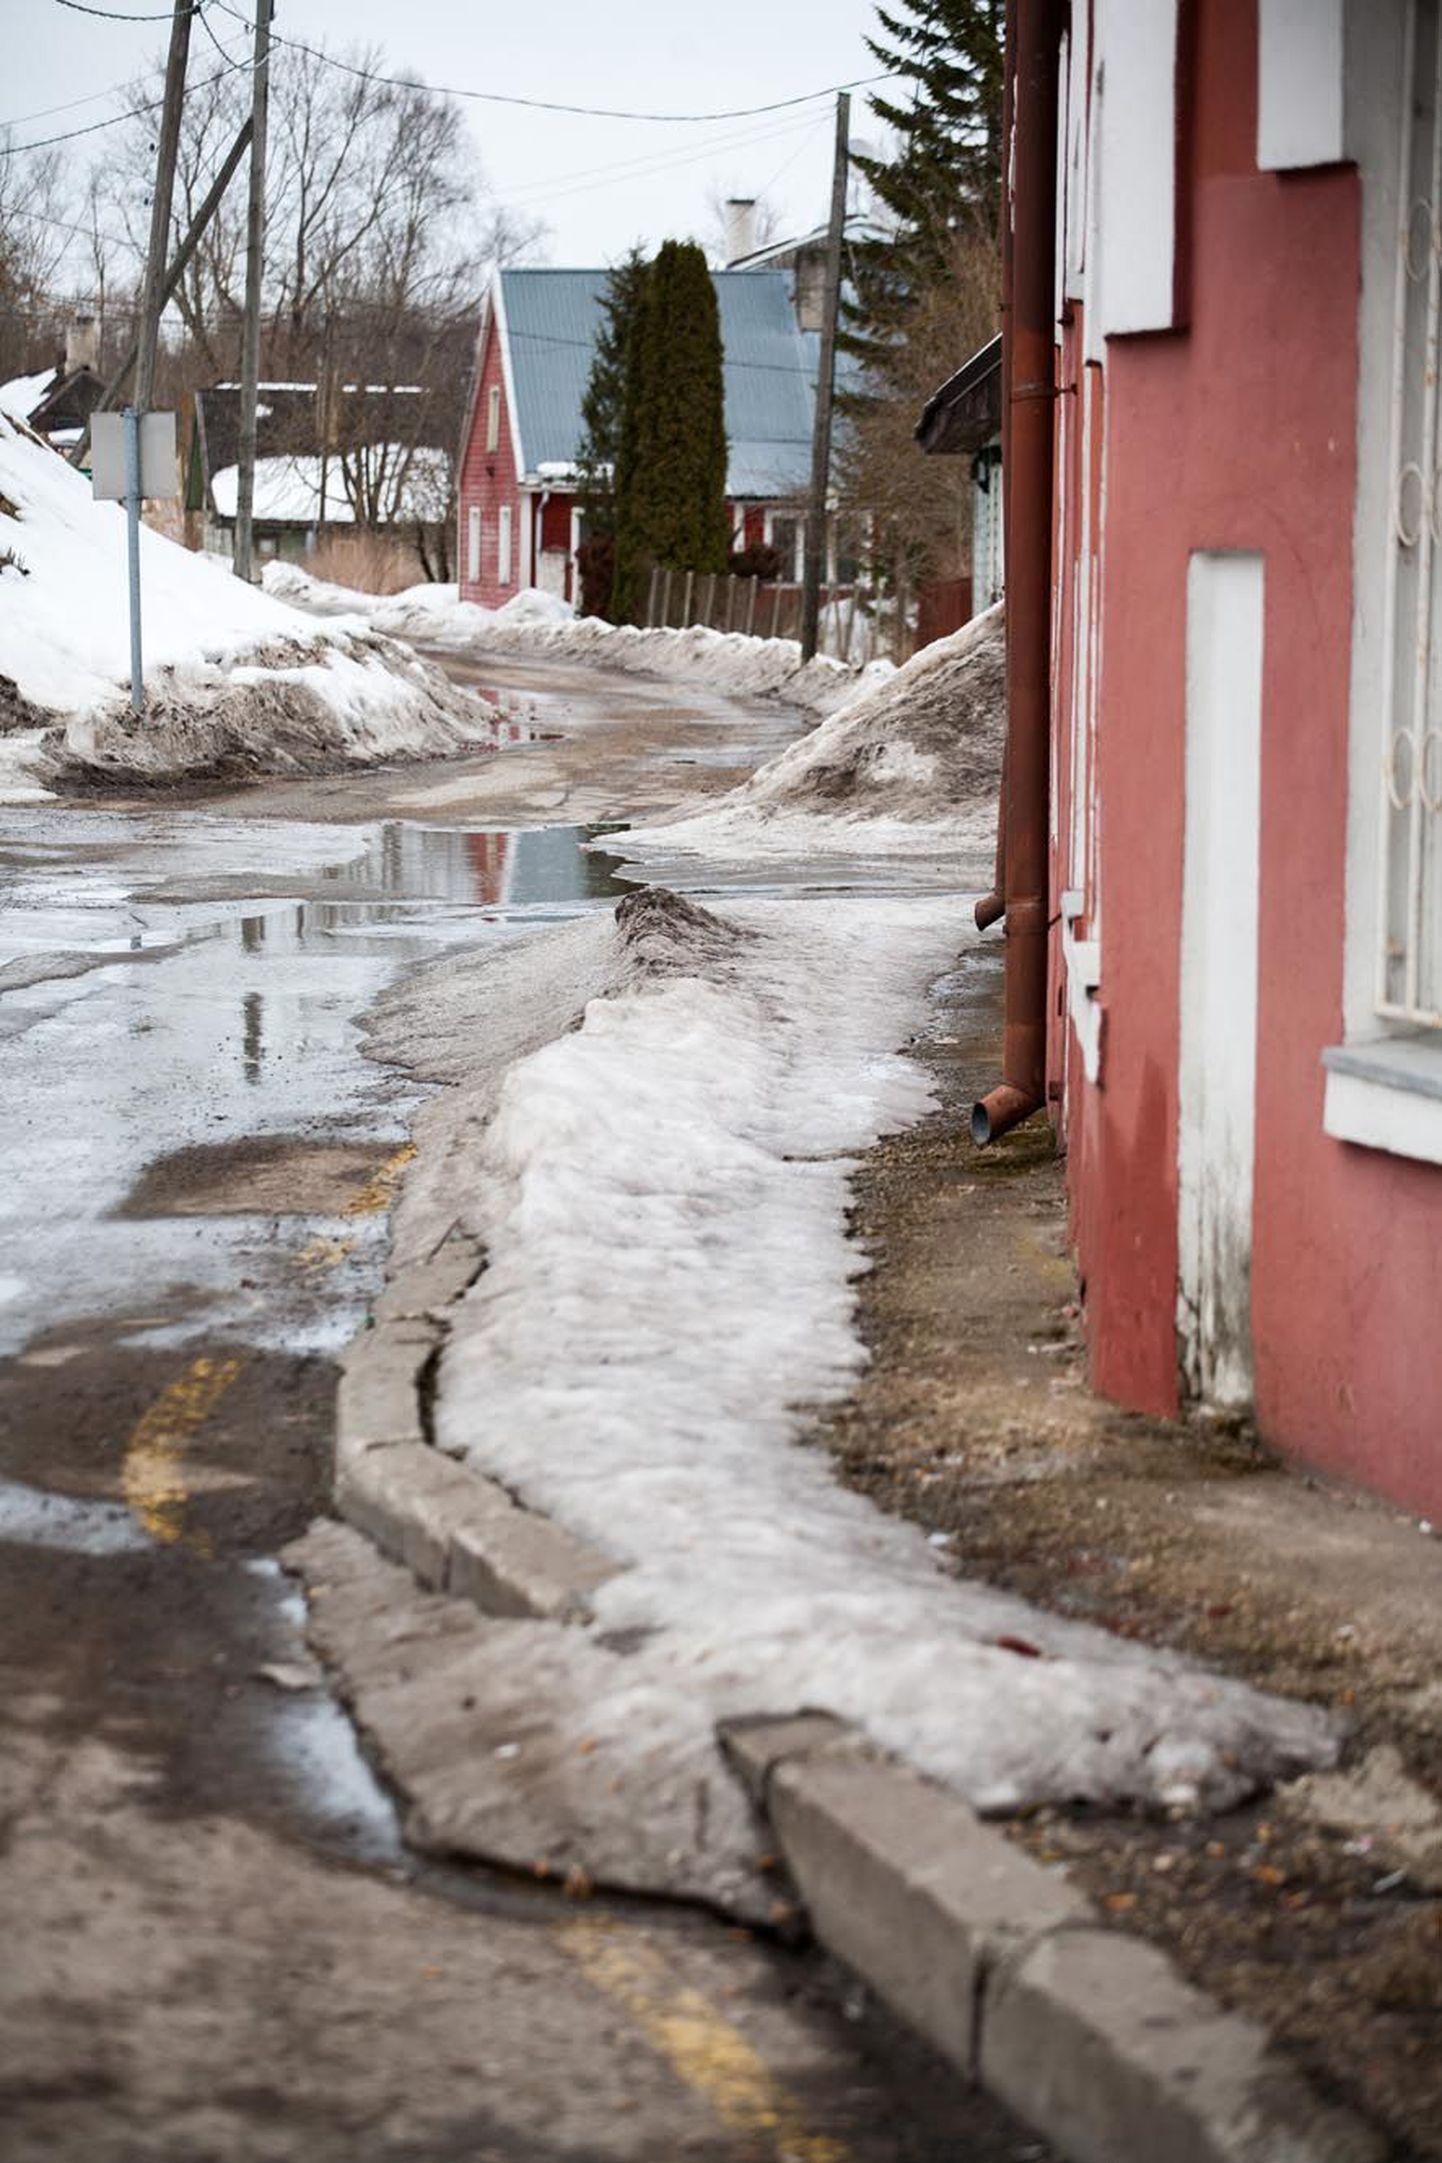 Laia tänava kõnniteel (paremal) lükatakse lund ja tehakse libedustõrjet linna rahastusel ja kord on majas. Parkali tänavas on see töö kinnistuomanike õlul ja nagu näha, on kõnnitee sama hästi kui läbimatu.